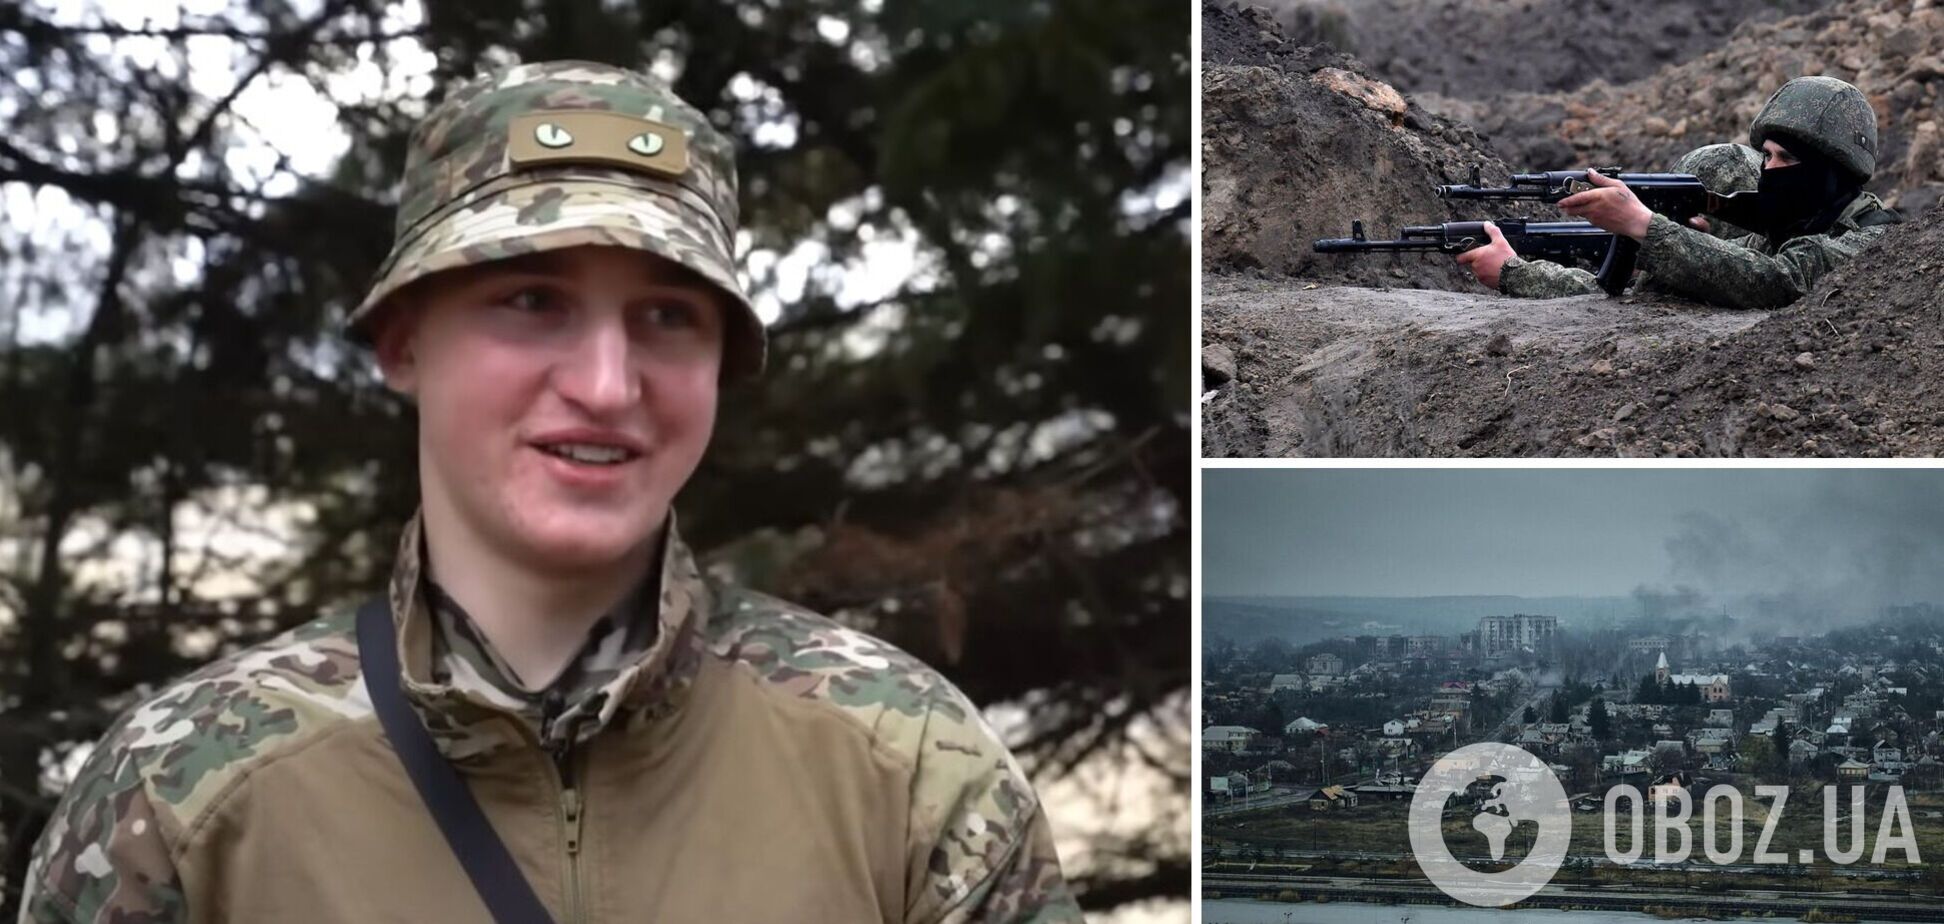 'В свои 18 лет решил взять оружие в руки': защитник Украины рассказал о бое с врагом под Бахмутом на расстоянии восьми метров. Видео